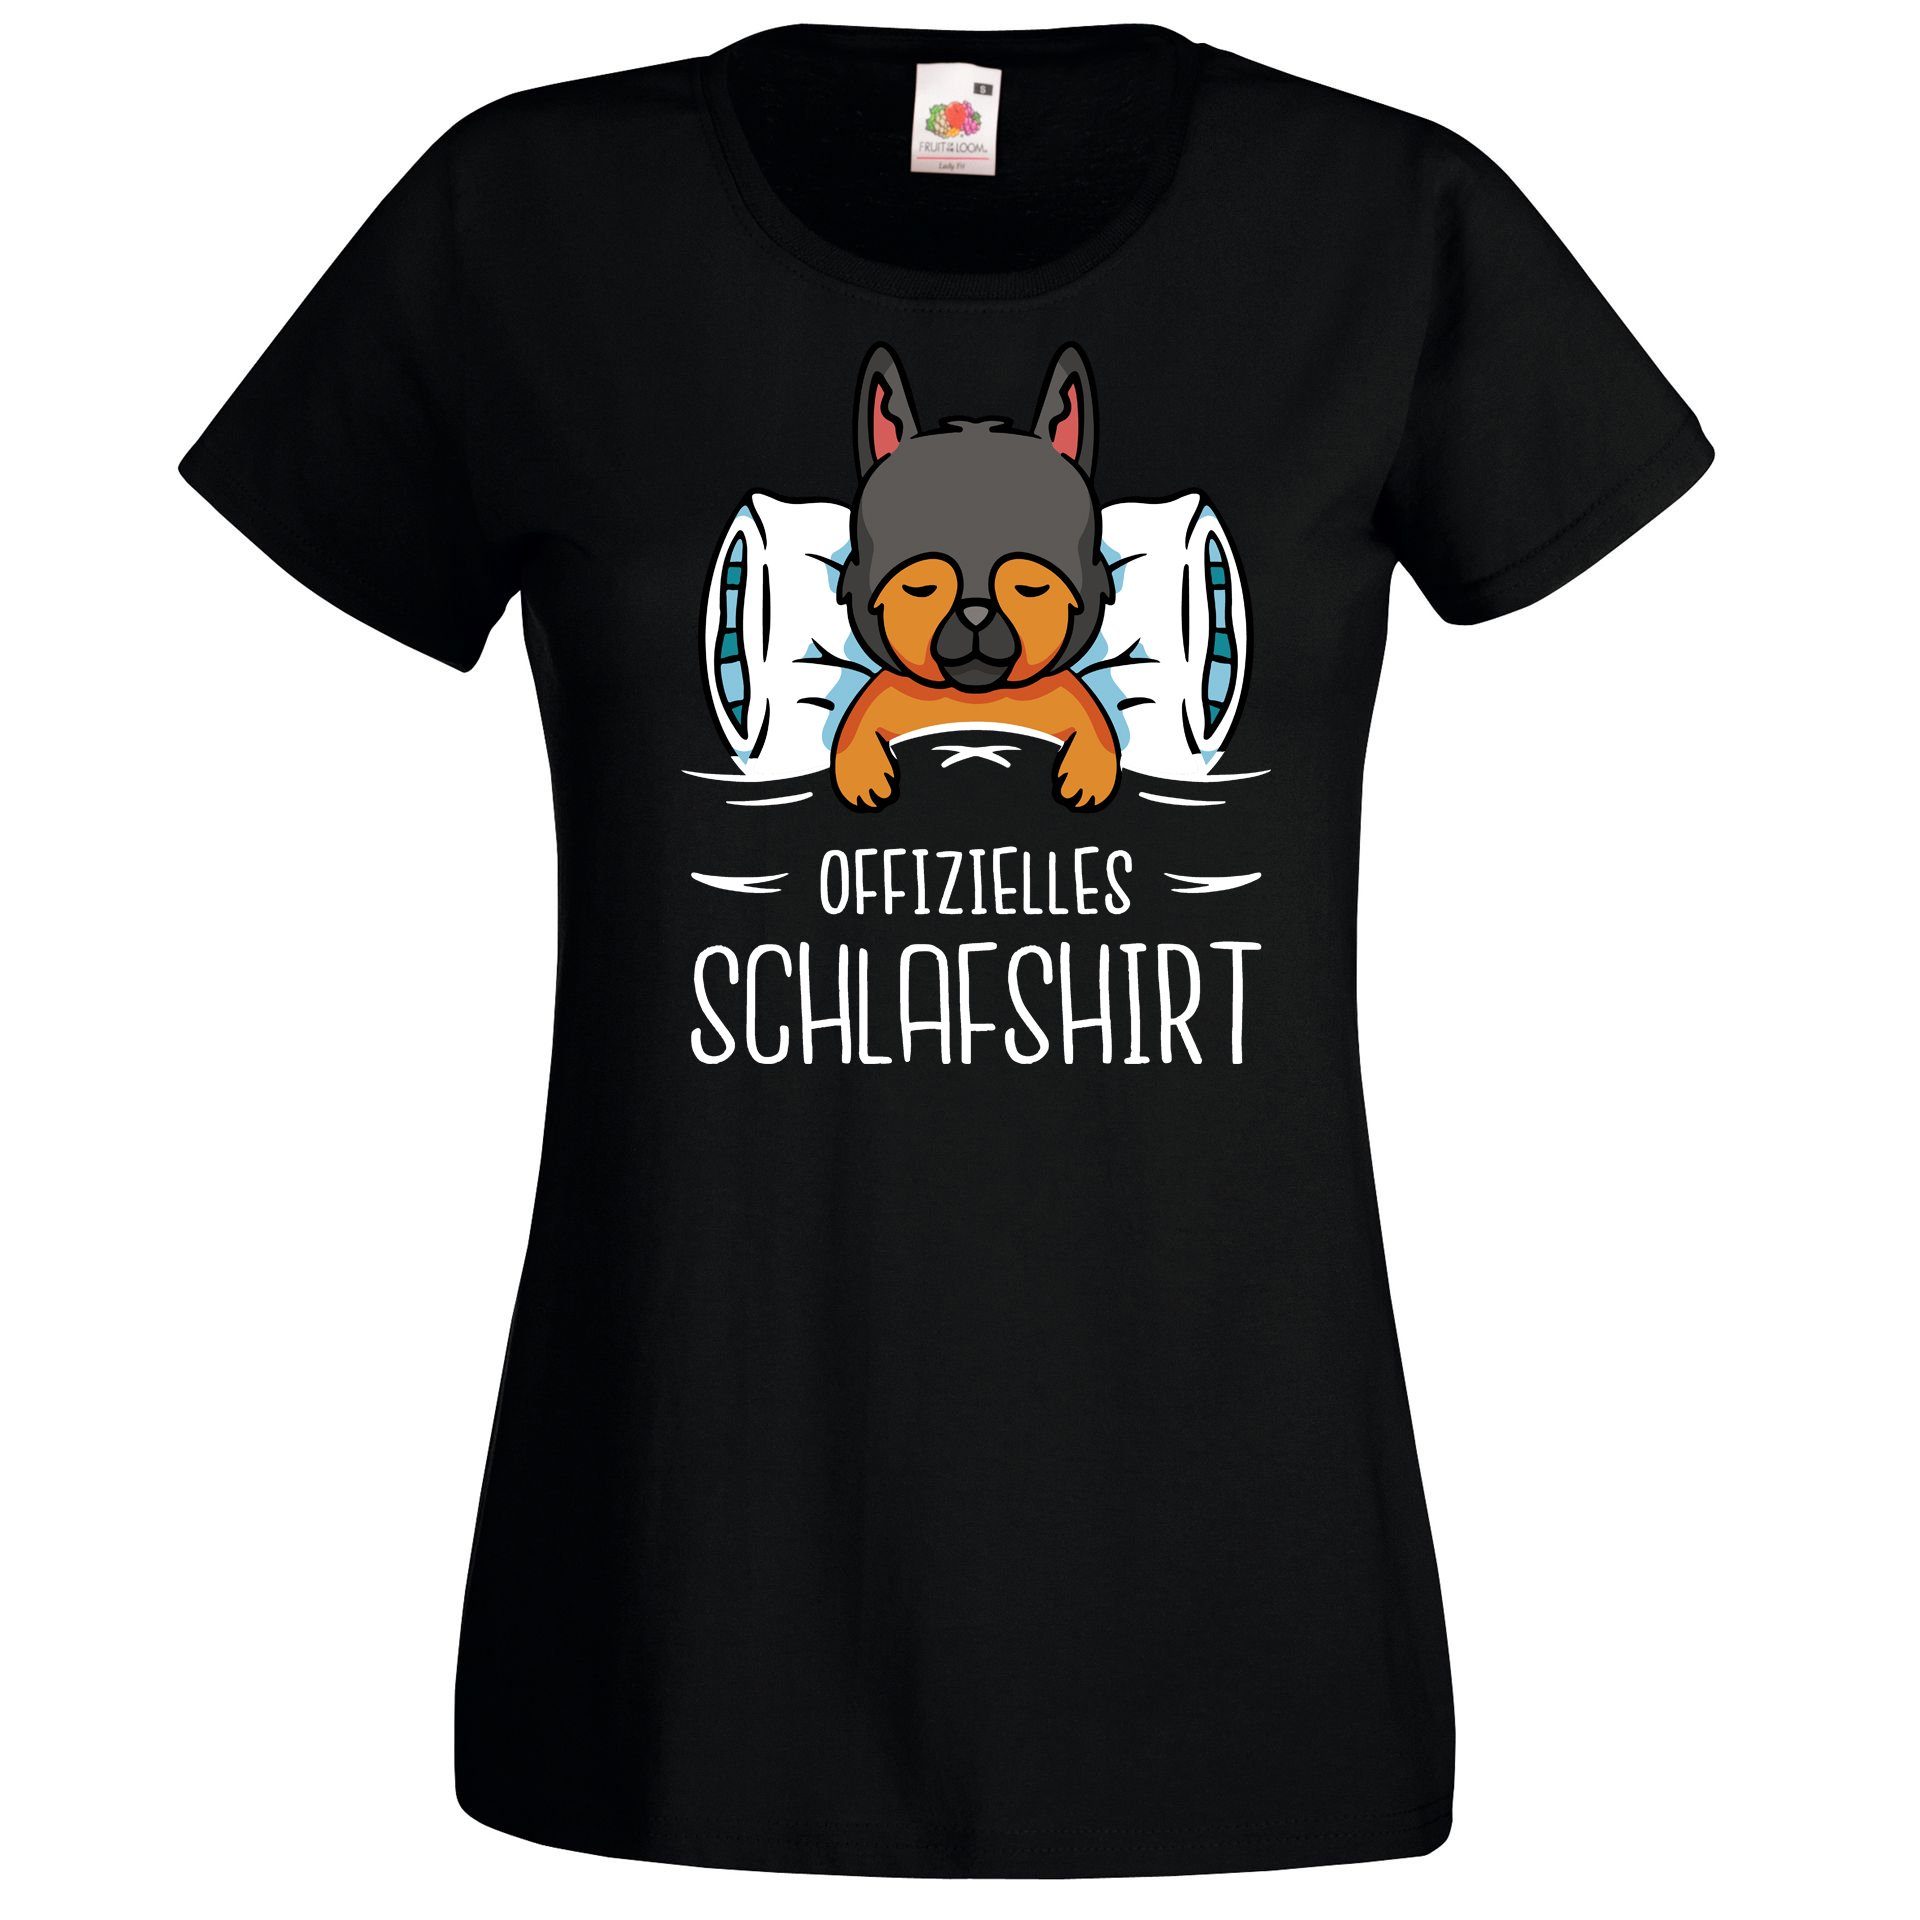 T-Shirt Schlafshirt Print mit Designz Shirt modischem Damen Schwarz Youth Hundewelpen Offizielles